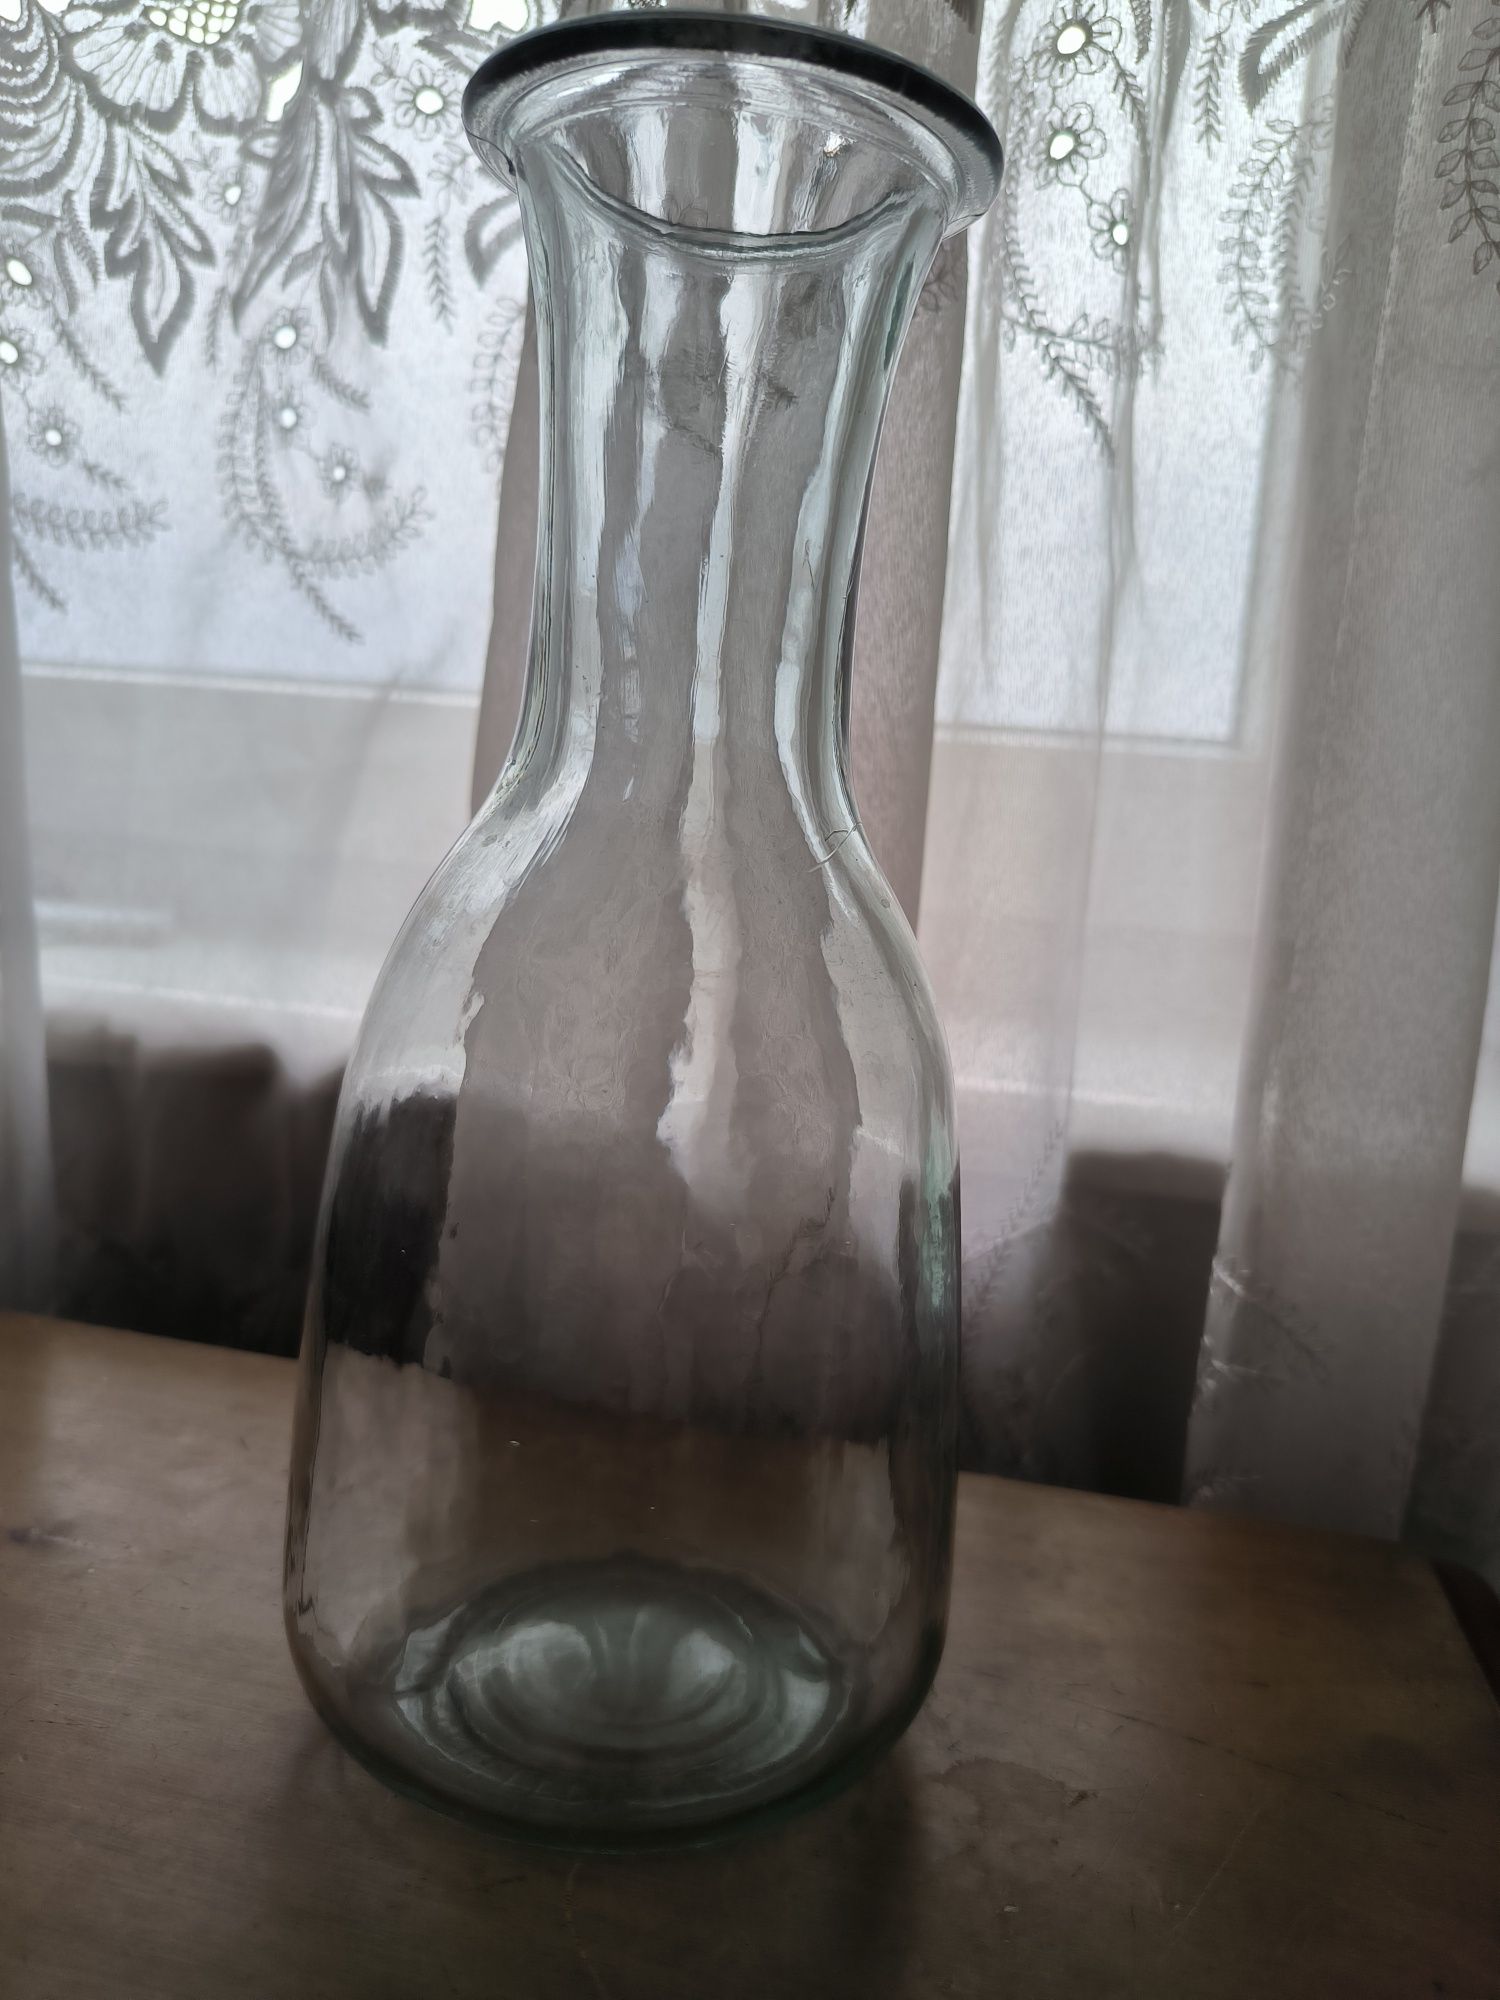 Szklany wazon średniej wielkości z grubego szkła